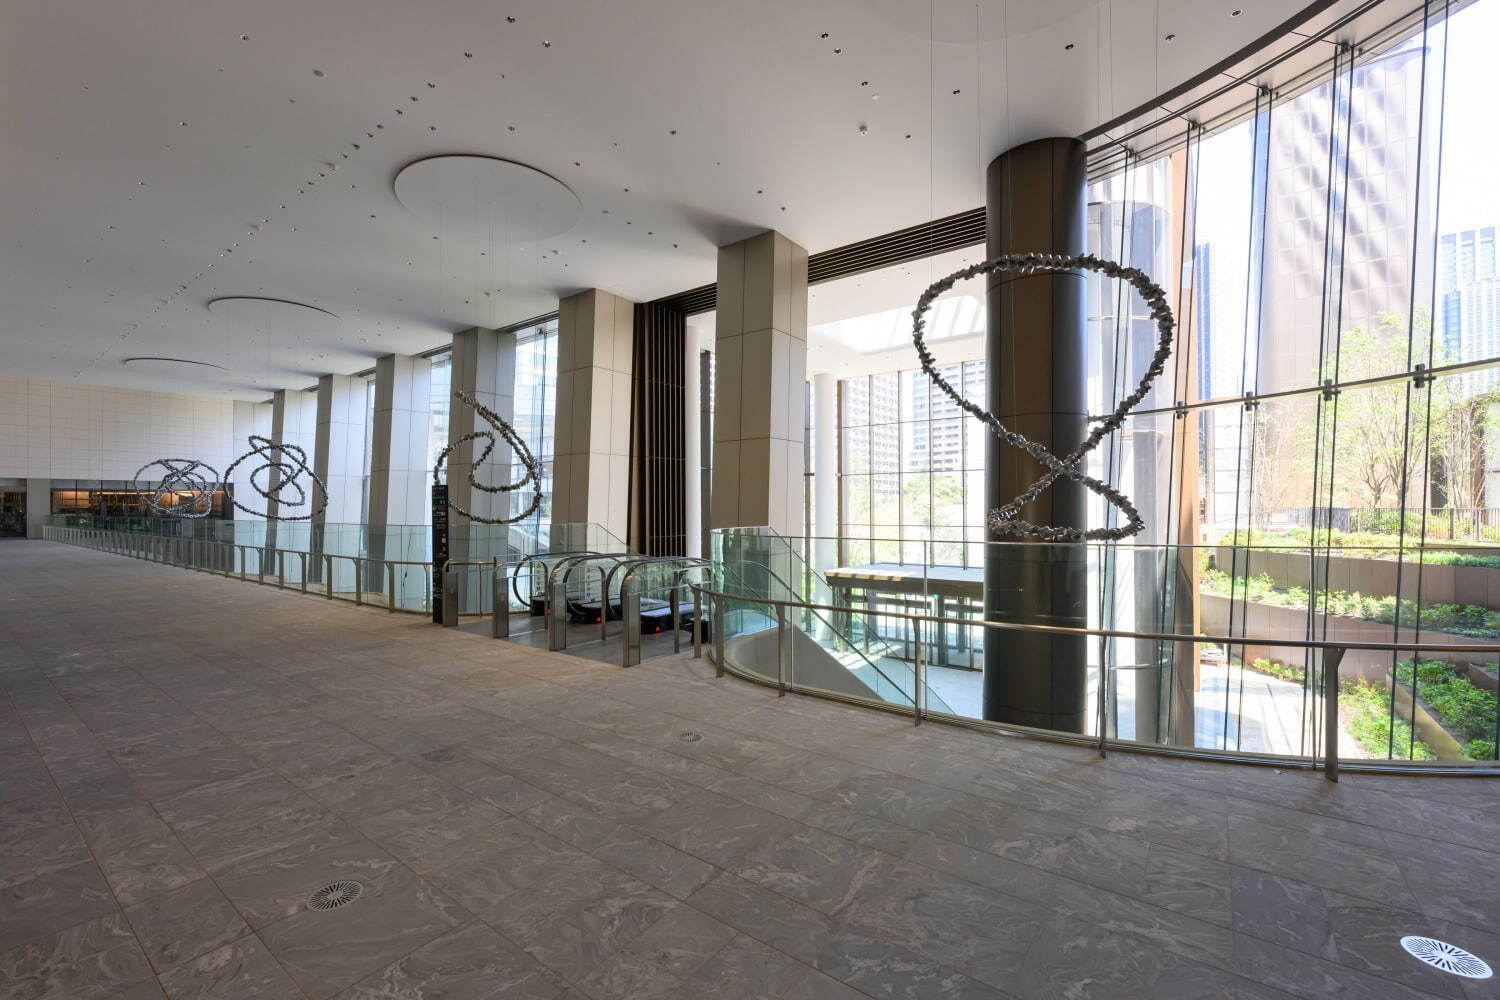 「麻布台ヒルズ」約330mの超高層ビル「森JPタワー」誕生、商業施設に59店舗がオープン｜写真20